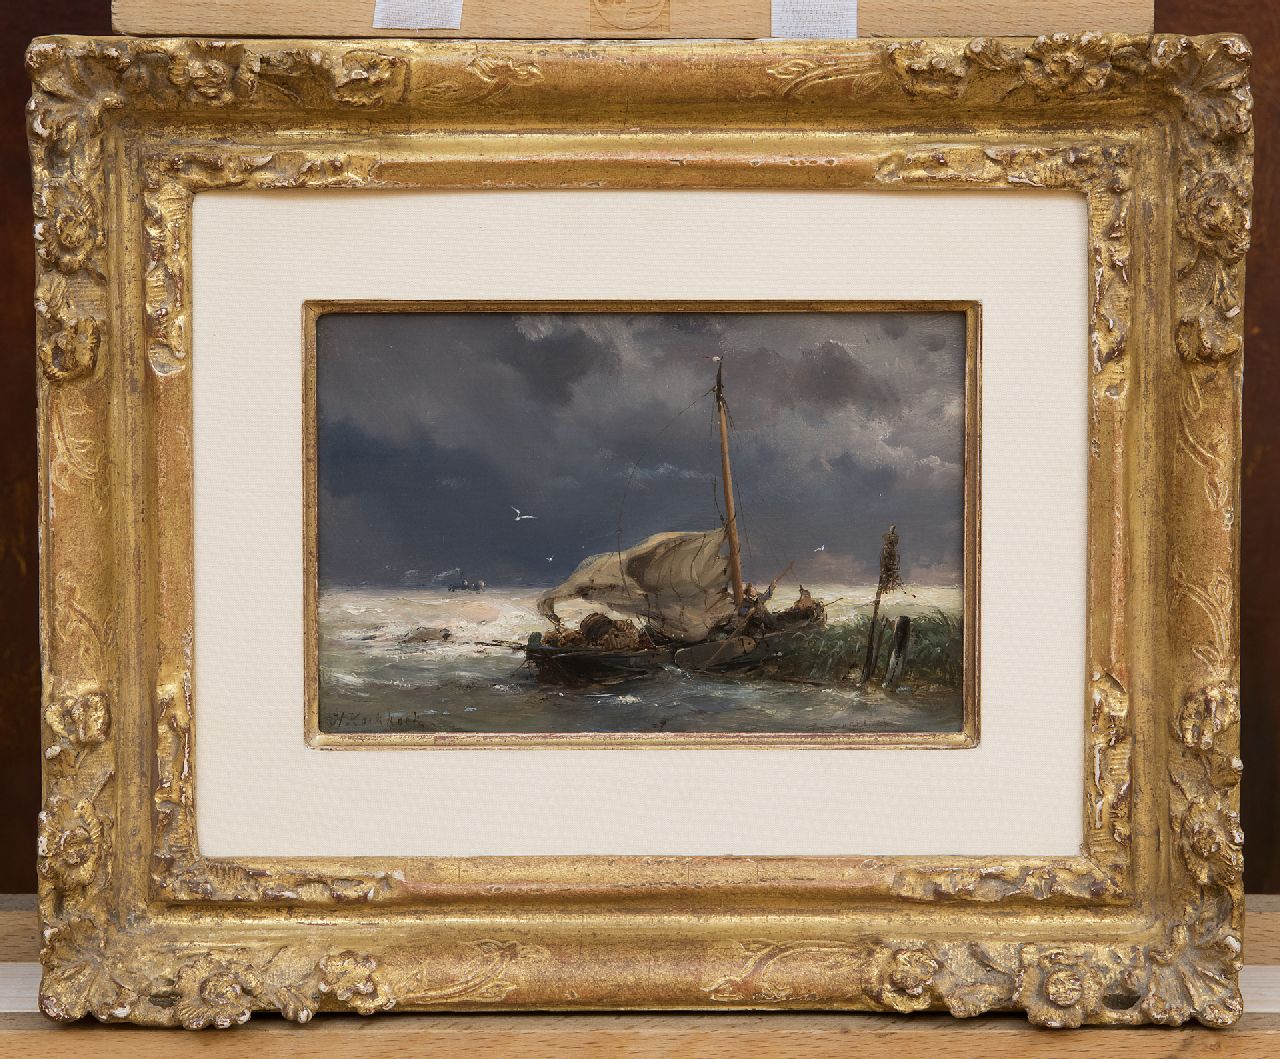 Koekkoek H.  | Hermanus Koekkoek, Vissersboot en stoomschip in zwaar weer, olieverf op paneel 10,7 x 16,0 cm, gesigneerd linksonder en VERKOCHT